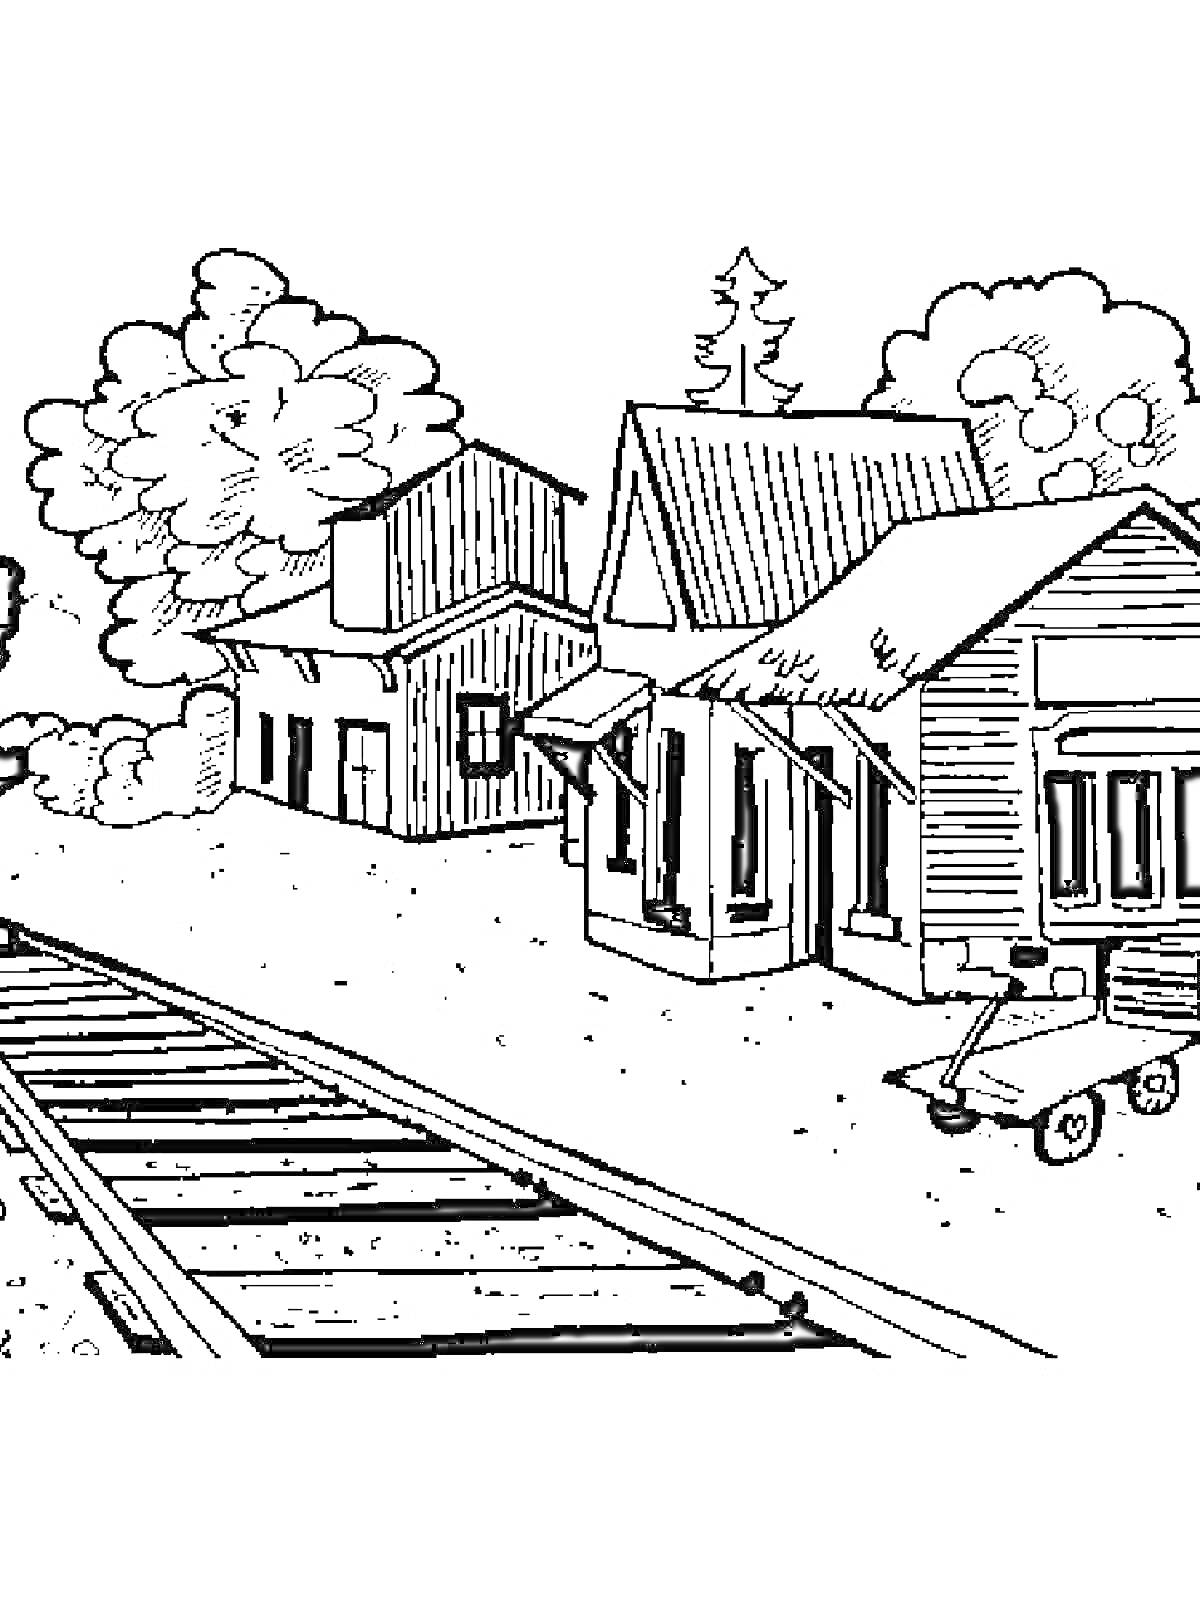 На раскраске изображено: Железная дорога, Поезд, Рельсы, Станция, Здание, Облака, Дым, Природа, Деревья, Телега